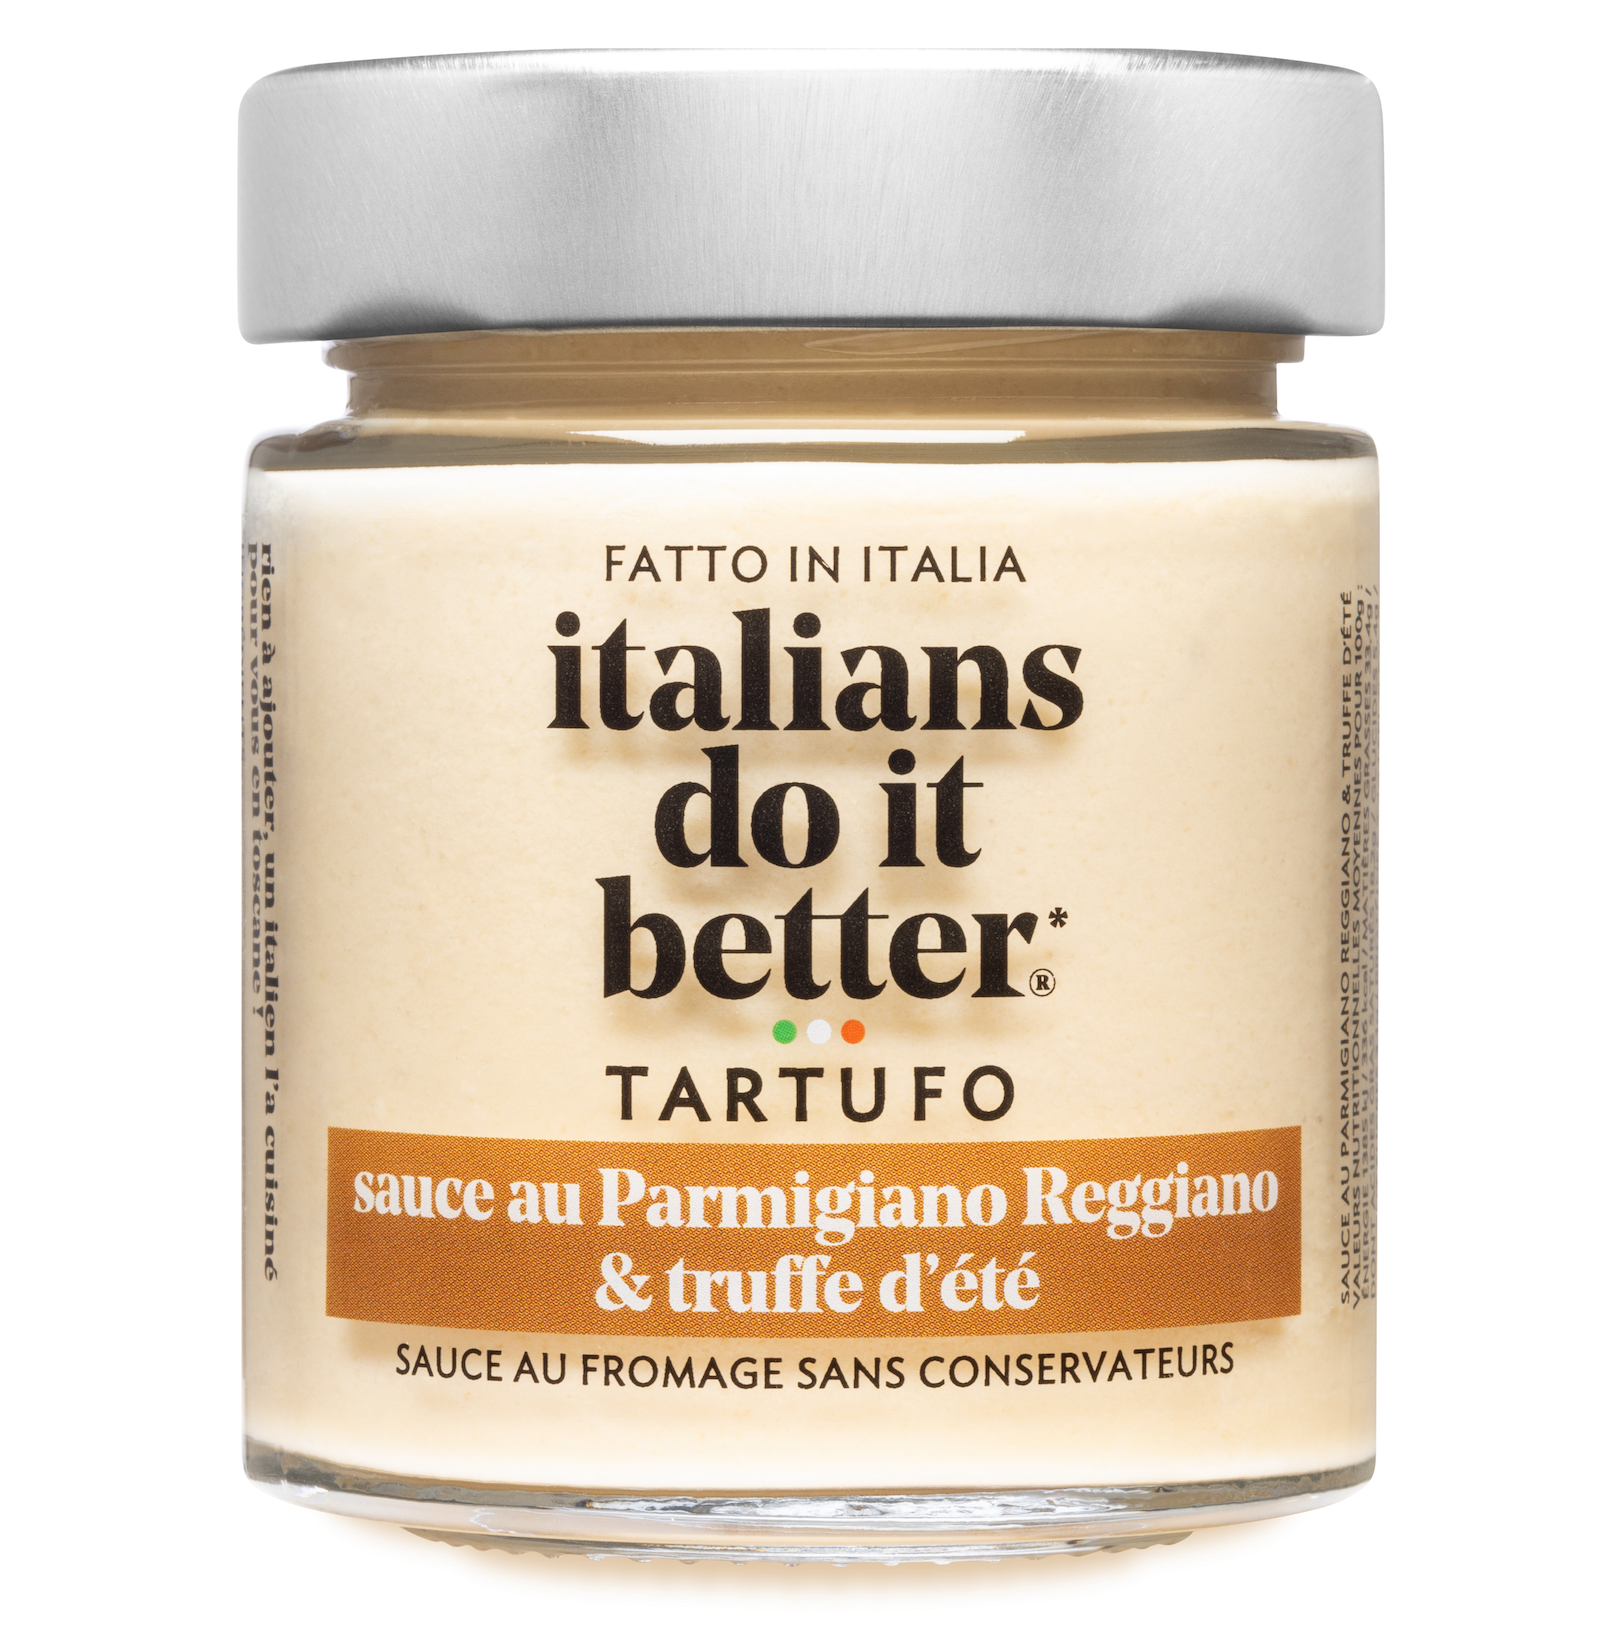 Tartufo - Parmigiano reggiano et truffe d'été - 130g